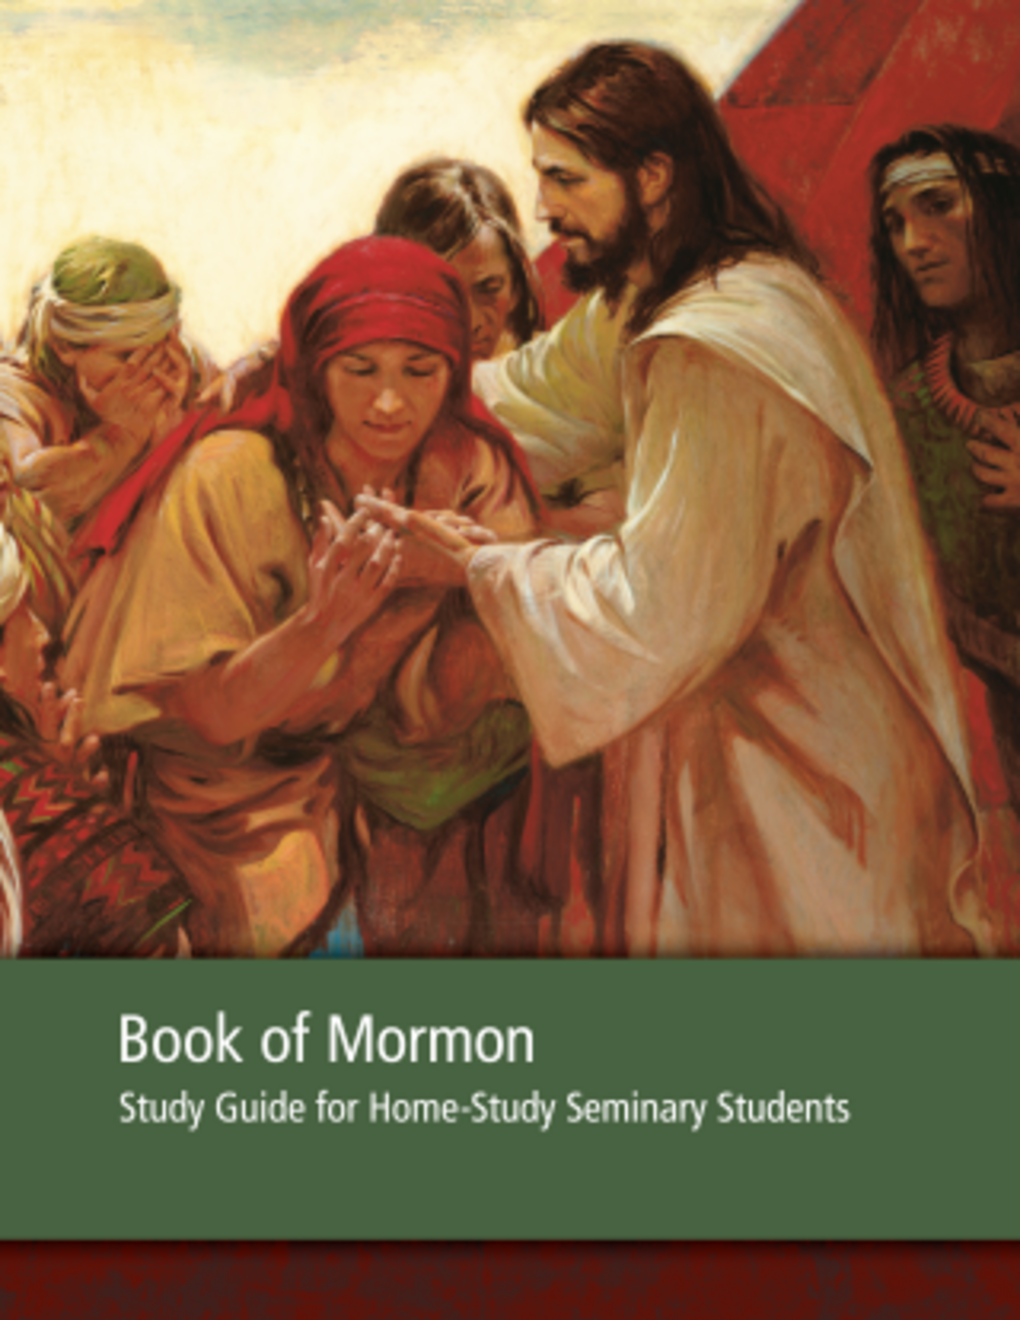 Penuntun Penelaahan Kitab Mormon bagi Siswa Seminari Belajar di Rumah - 2013